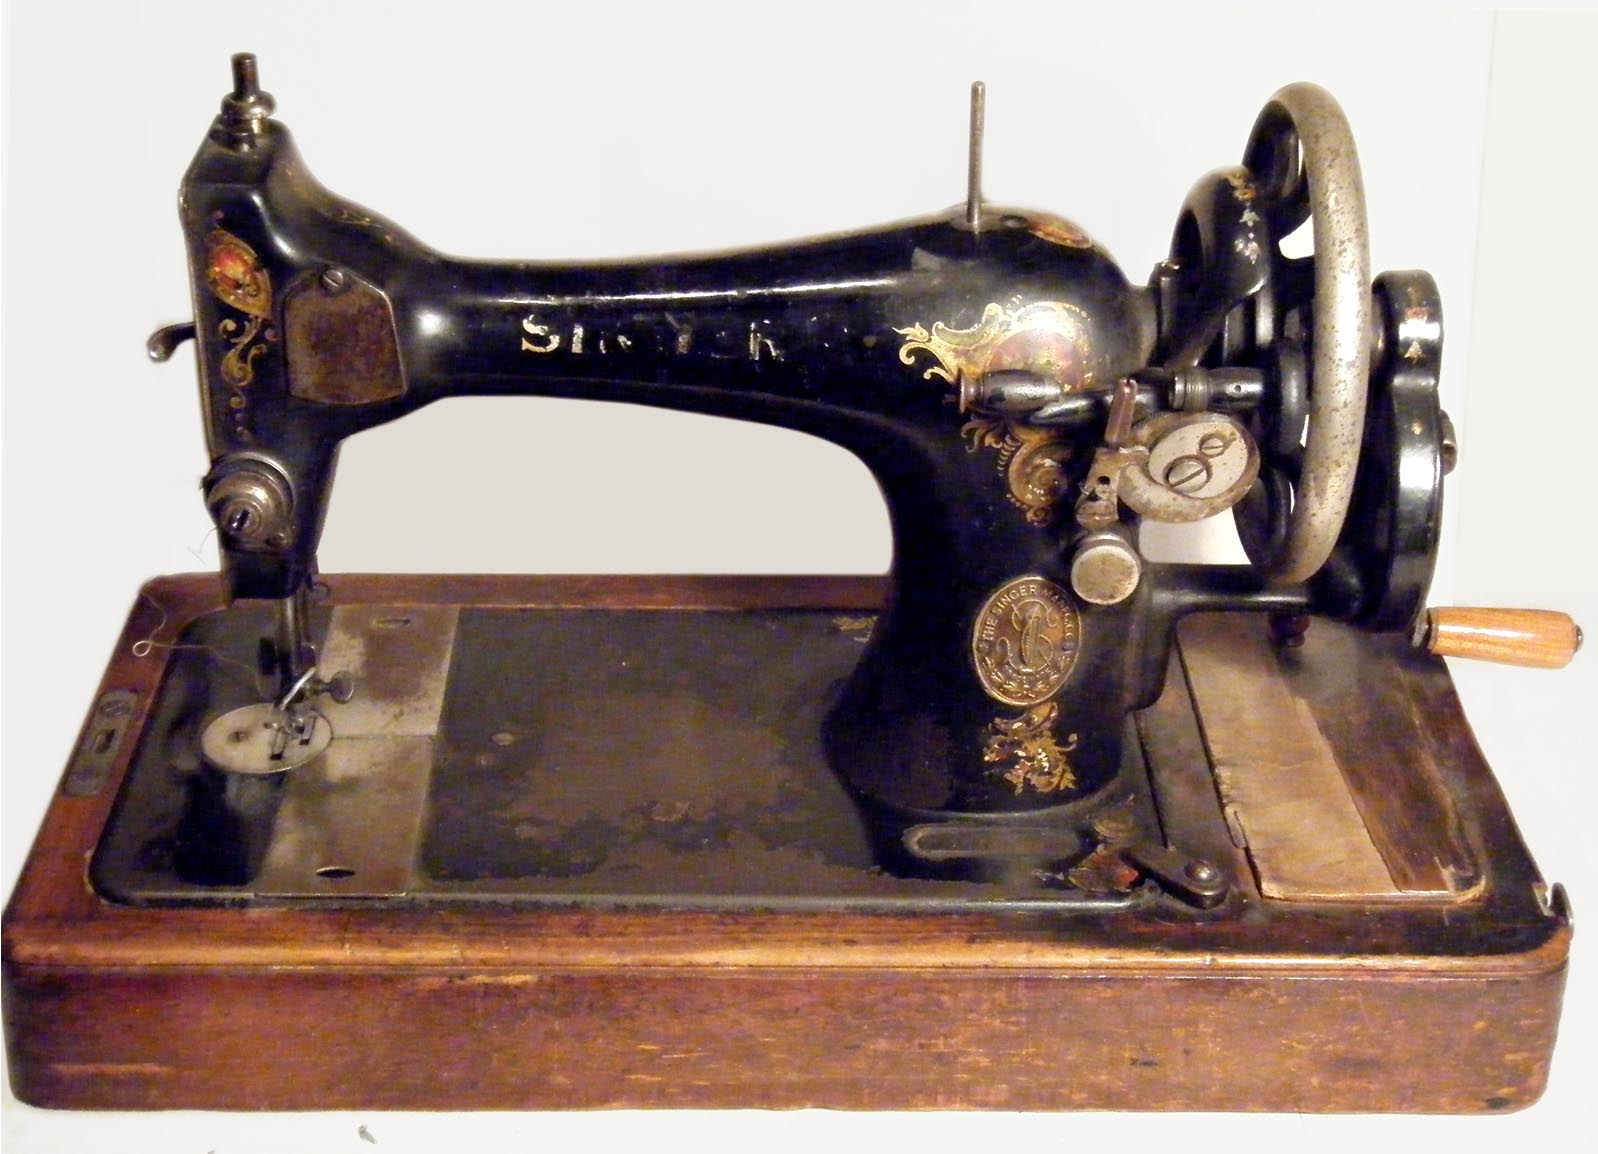 Singer's. Первая машинка Зингер. Первая швейная машина Зингера. Зингер швейная машинка 1790 года. История швейной машинки Зингер.